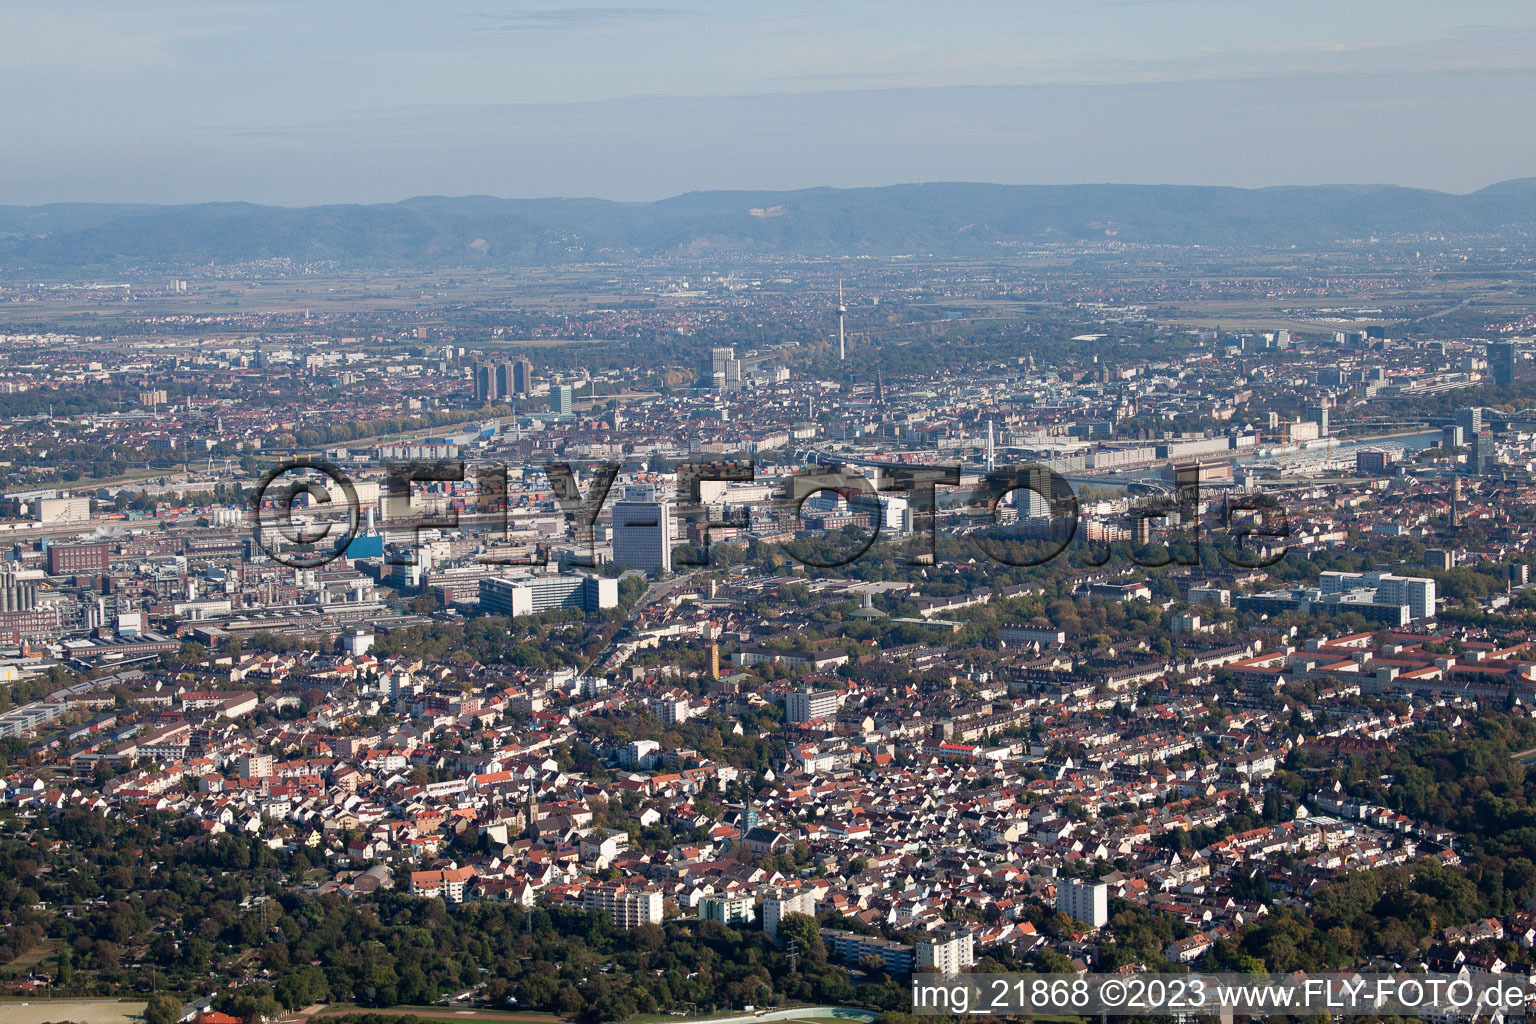 Luftbild von BASF Süd im Ortsteil Friesenheim in Ludwigshafen am Rhein im Bundesland Rheinland-Pfalz, Deutschland